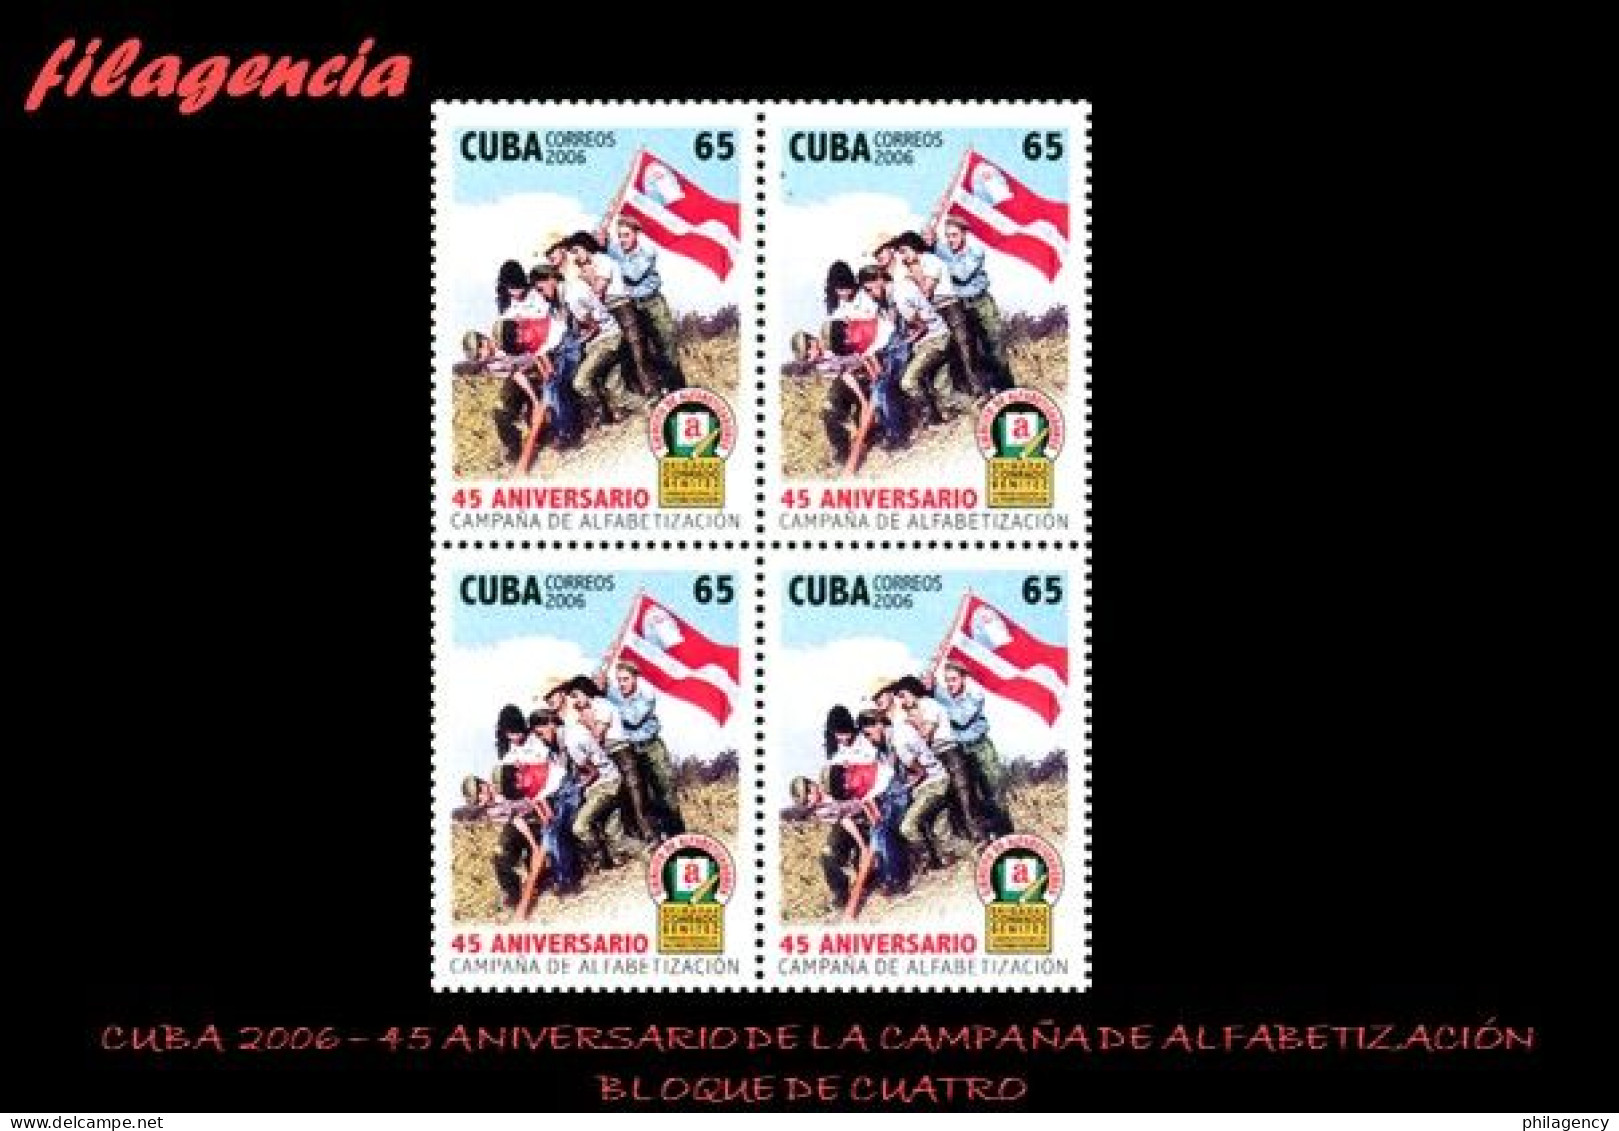 CUBA. BLOQUES DE CUATRO. 2006-37 45 ANIVERSARIO DE LA CAMPAÑA DE ALFABETIZACIÓN - Unused Stamps